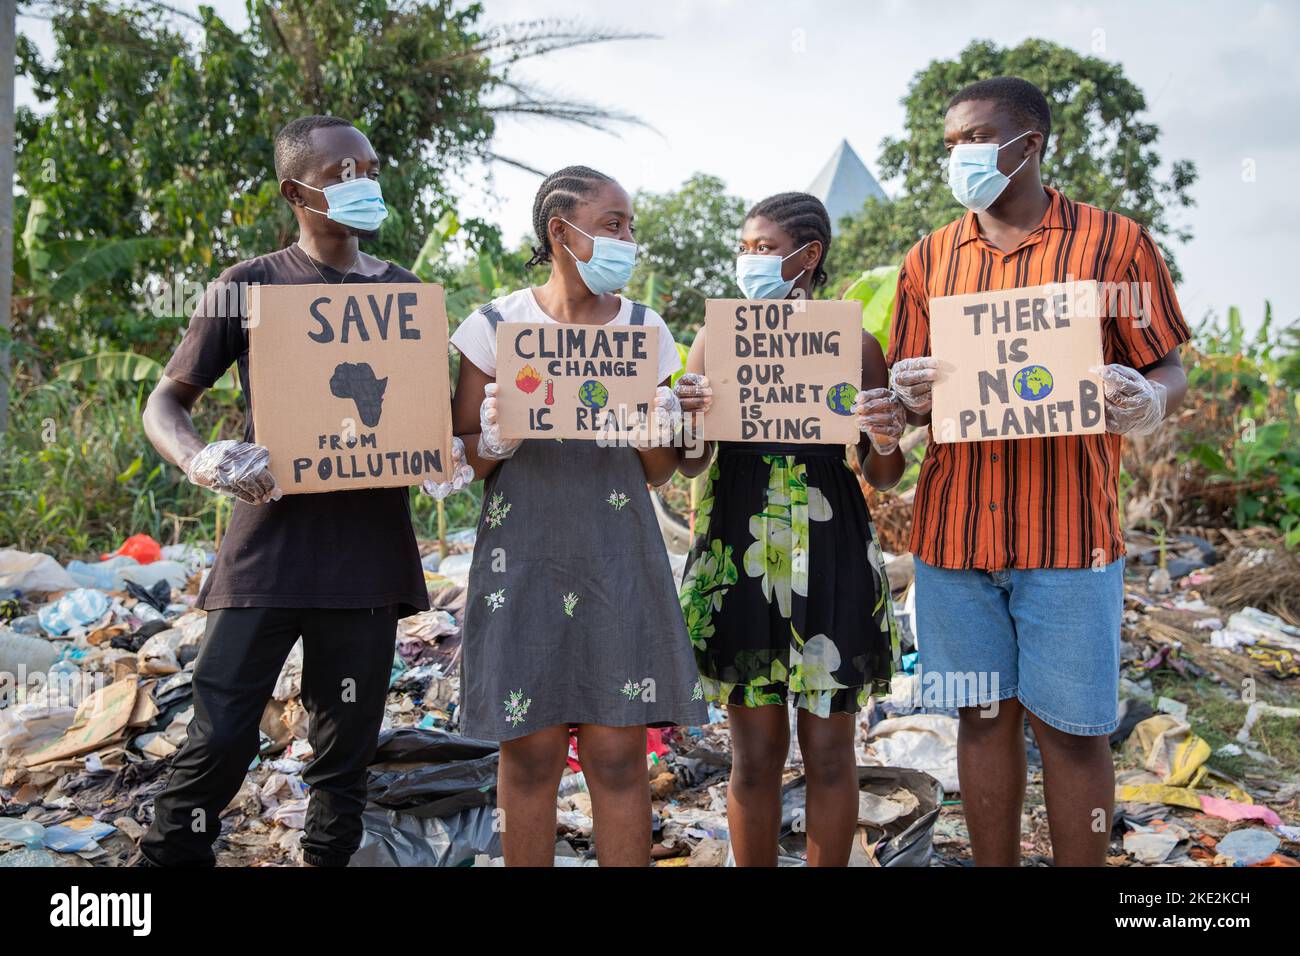 Les jeunes africains protestant contre la pollution en tenant des signes écrits:il n'y a pas de planète b. Banque D'Images